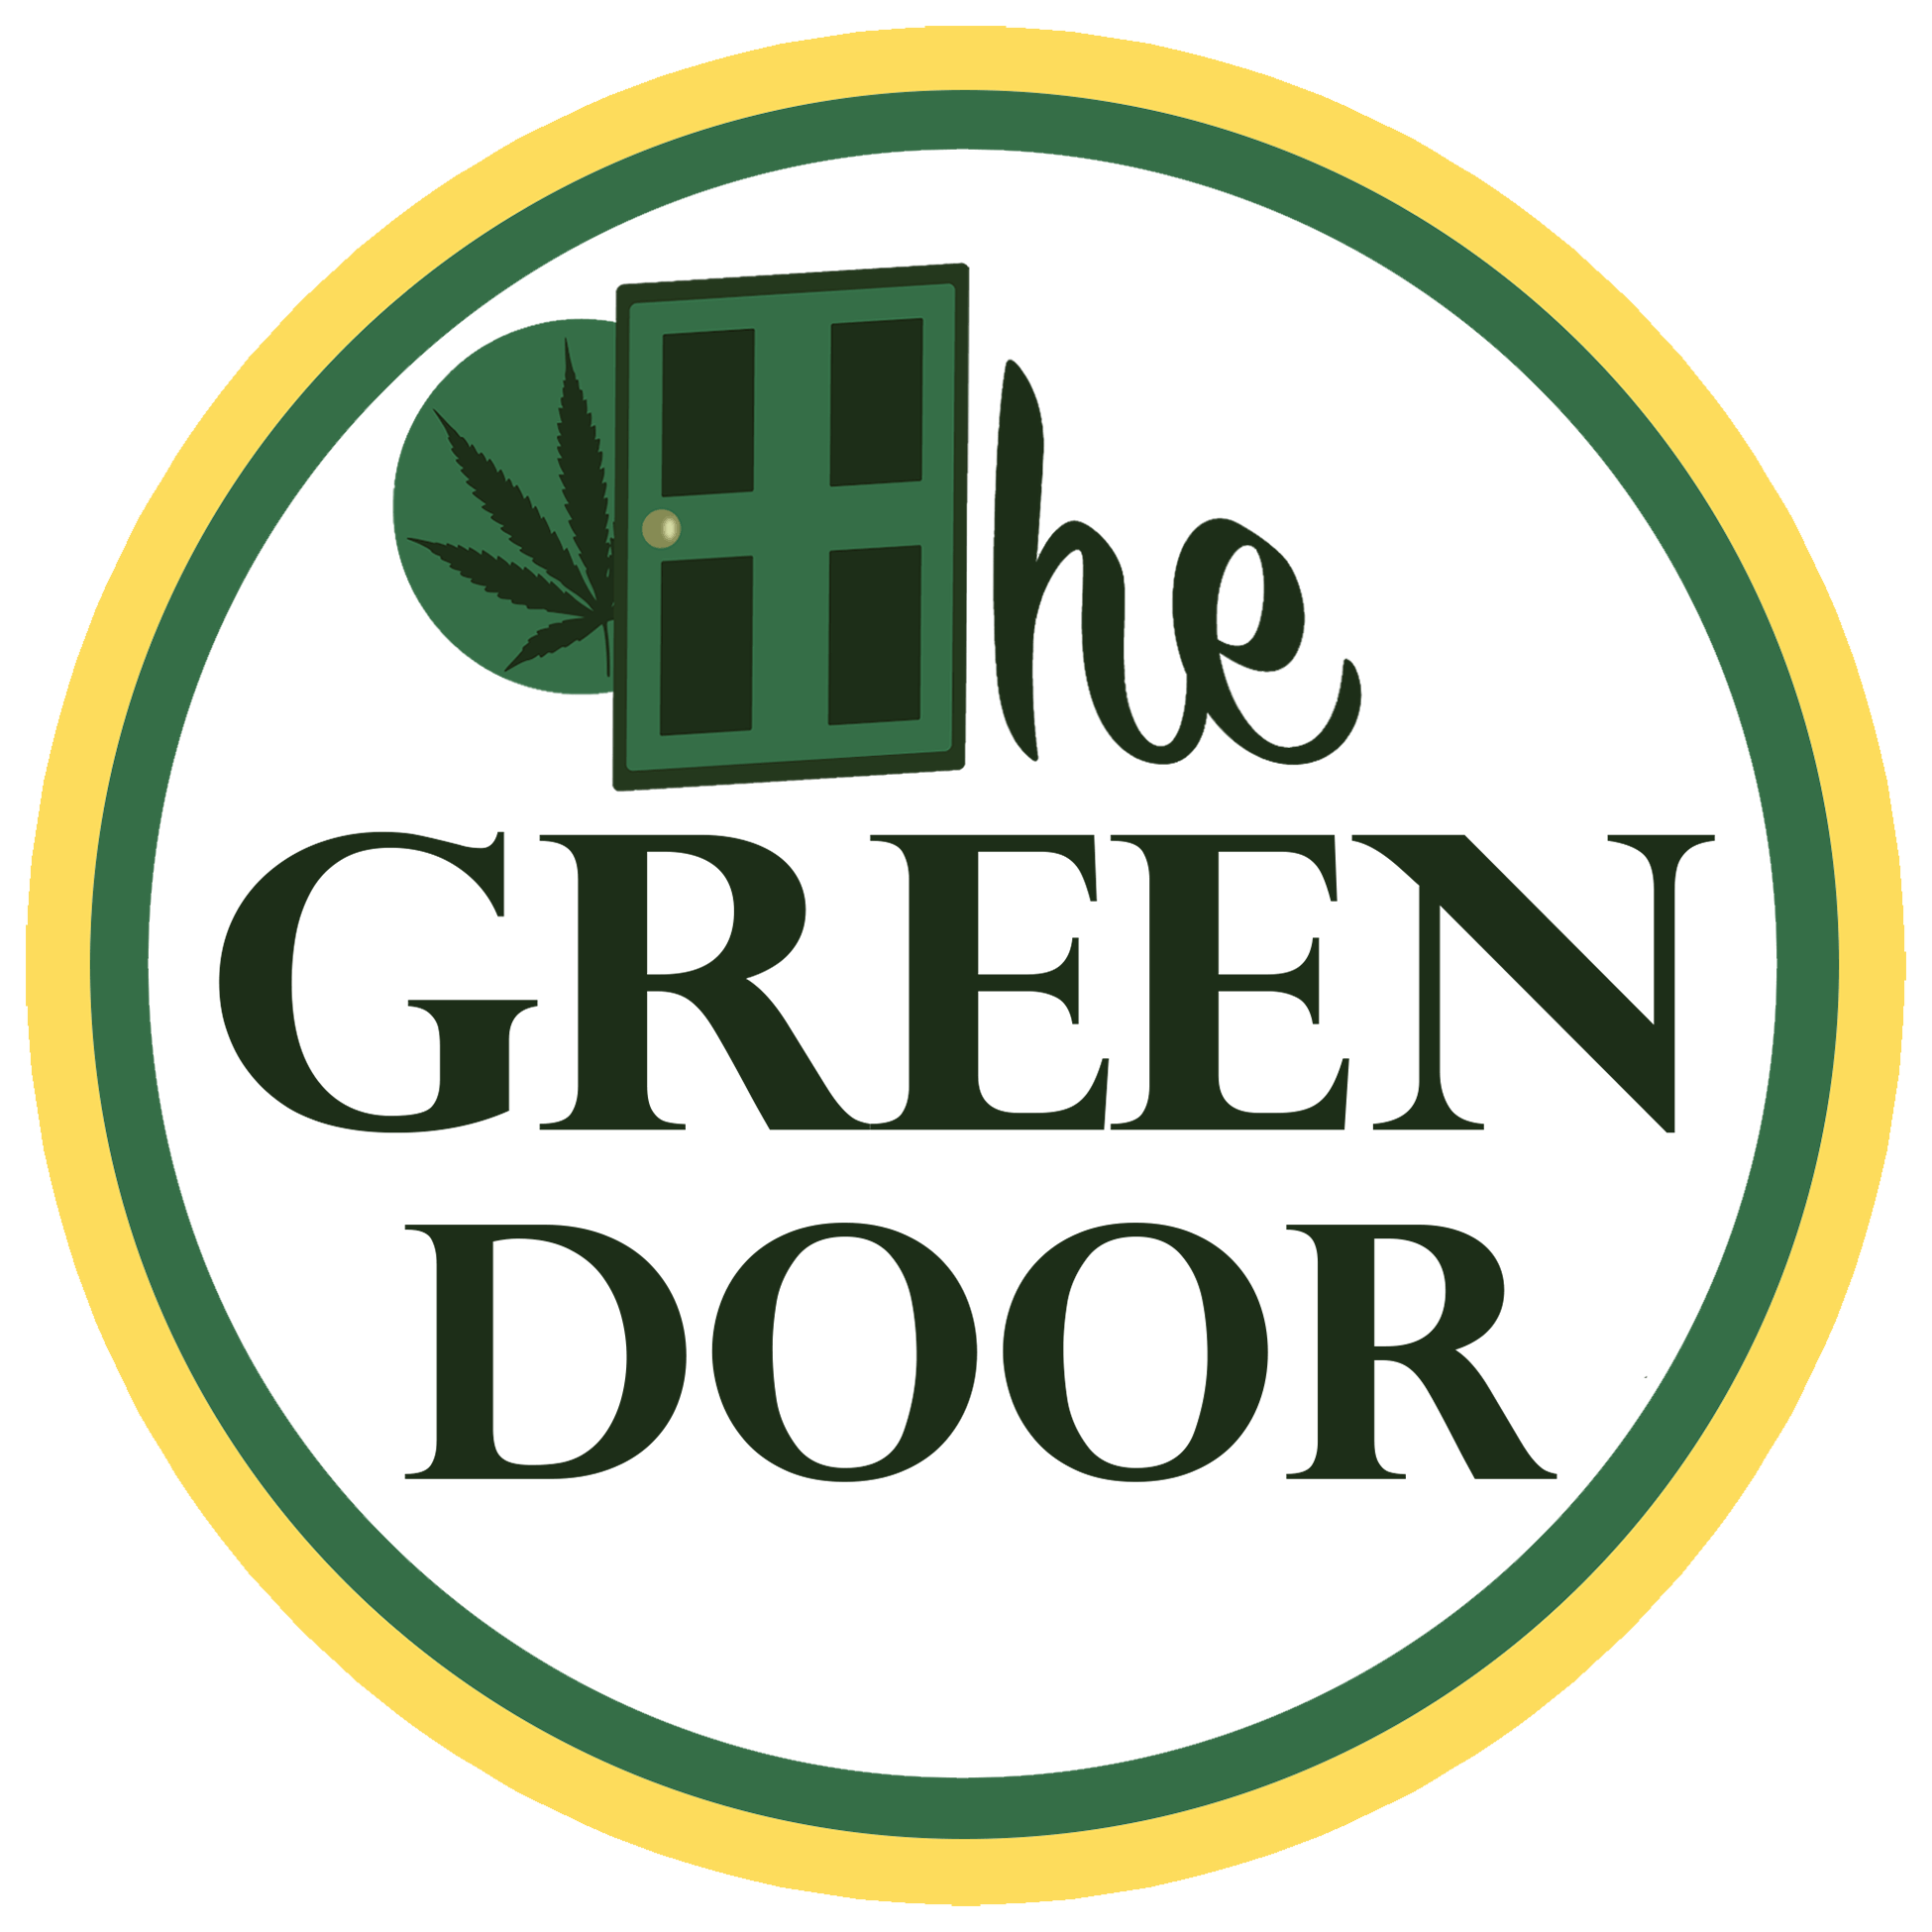 The Green Door - Bangor logo